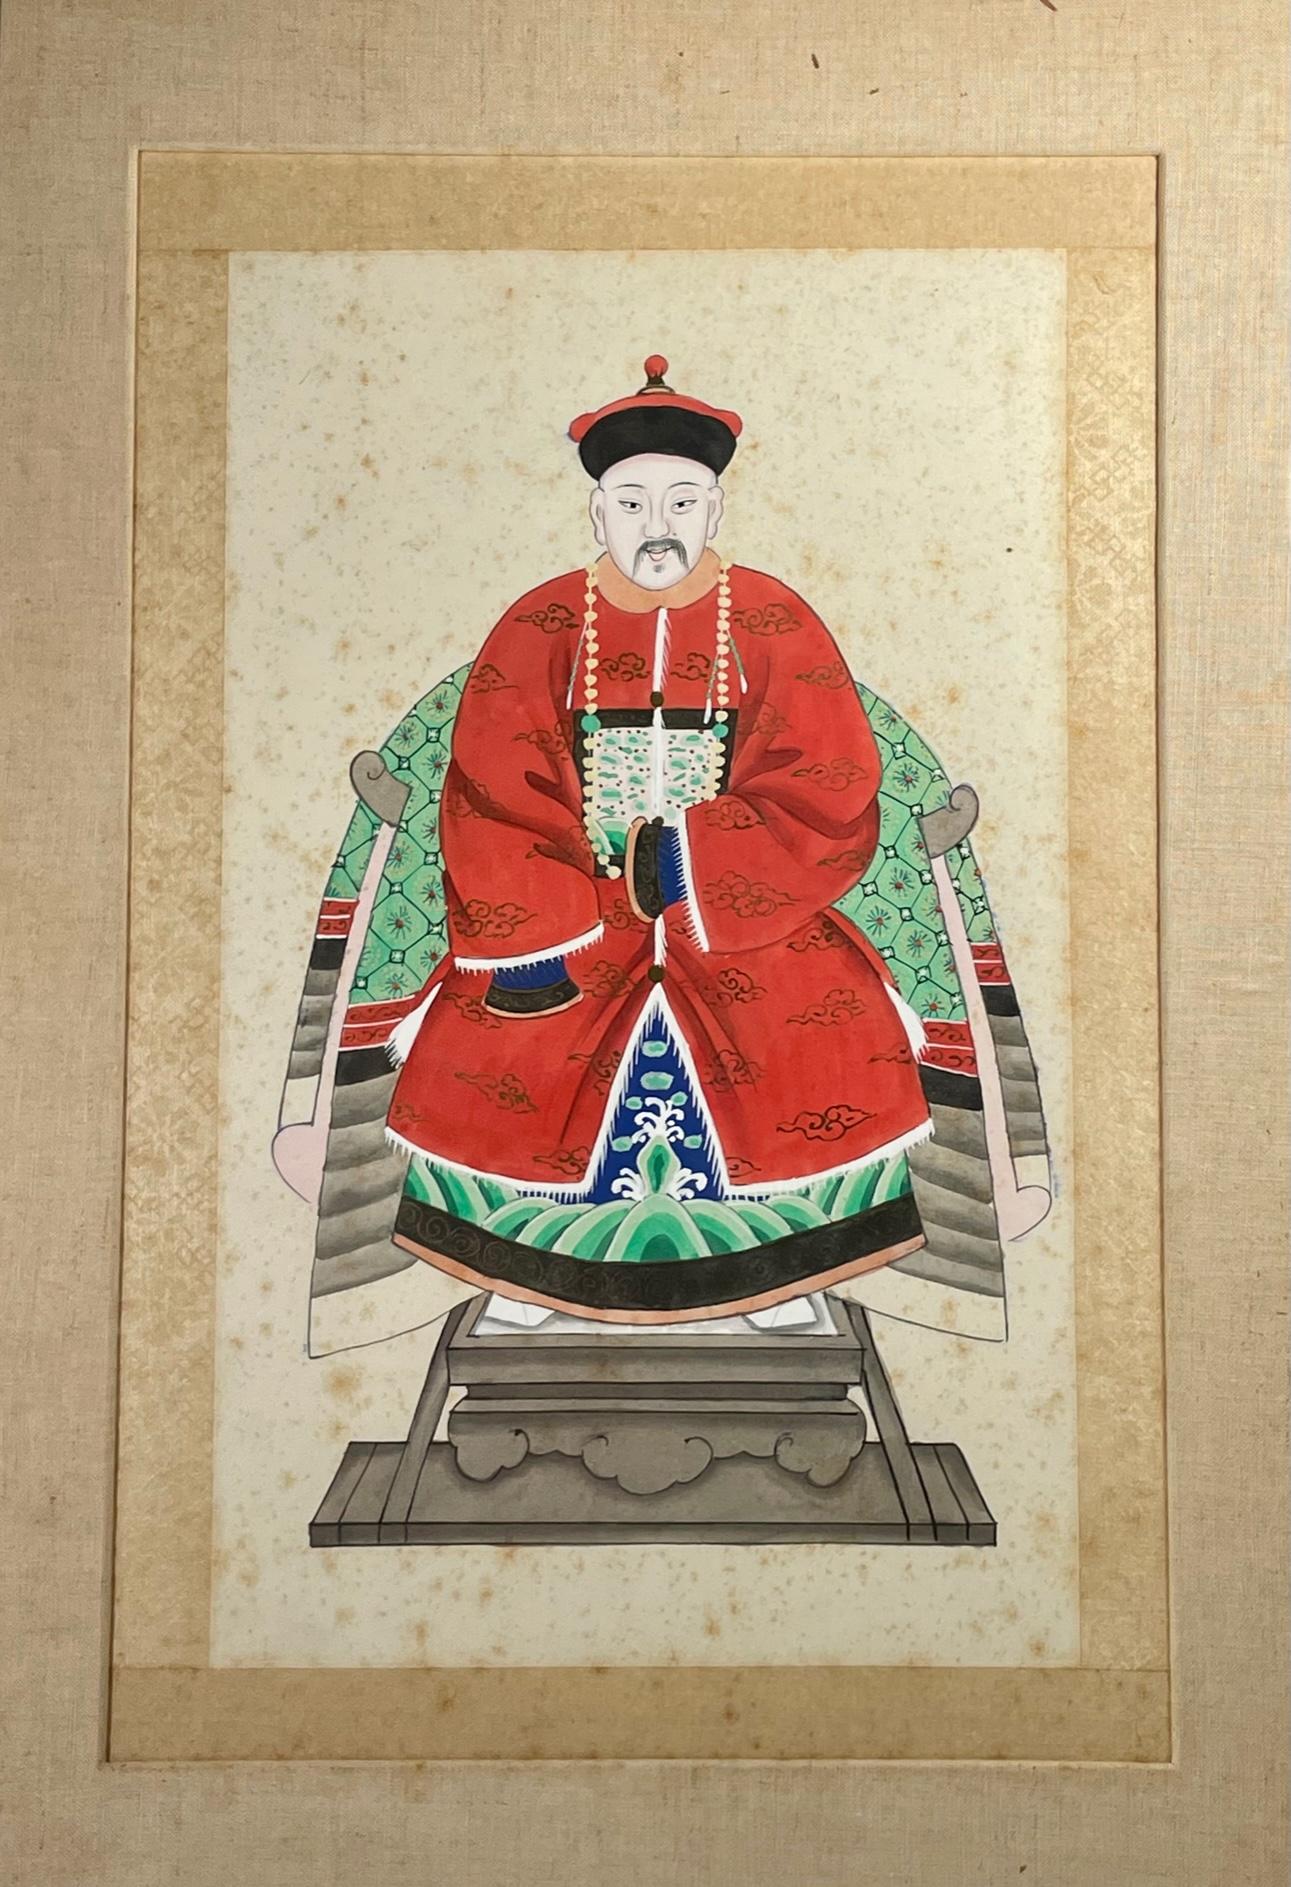 Portrait d'ancêtre chinois d'un dignitaire mandarin. 

Peinture ancienne à la détrempe sur papier représentant un dignitaire mandarin portant une robe de cour rouge et assis sur un trône. D'après le style de sa robe de cérémonie, cet homme était